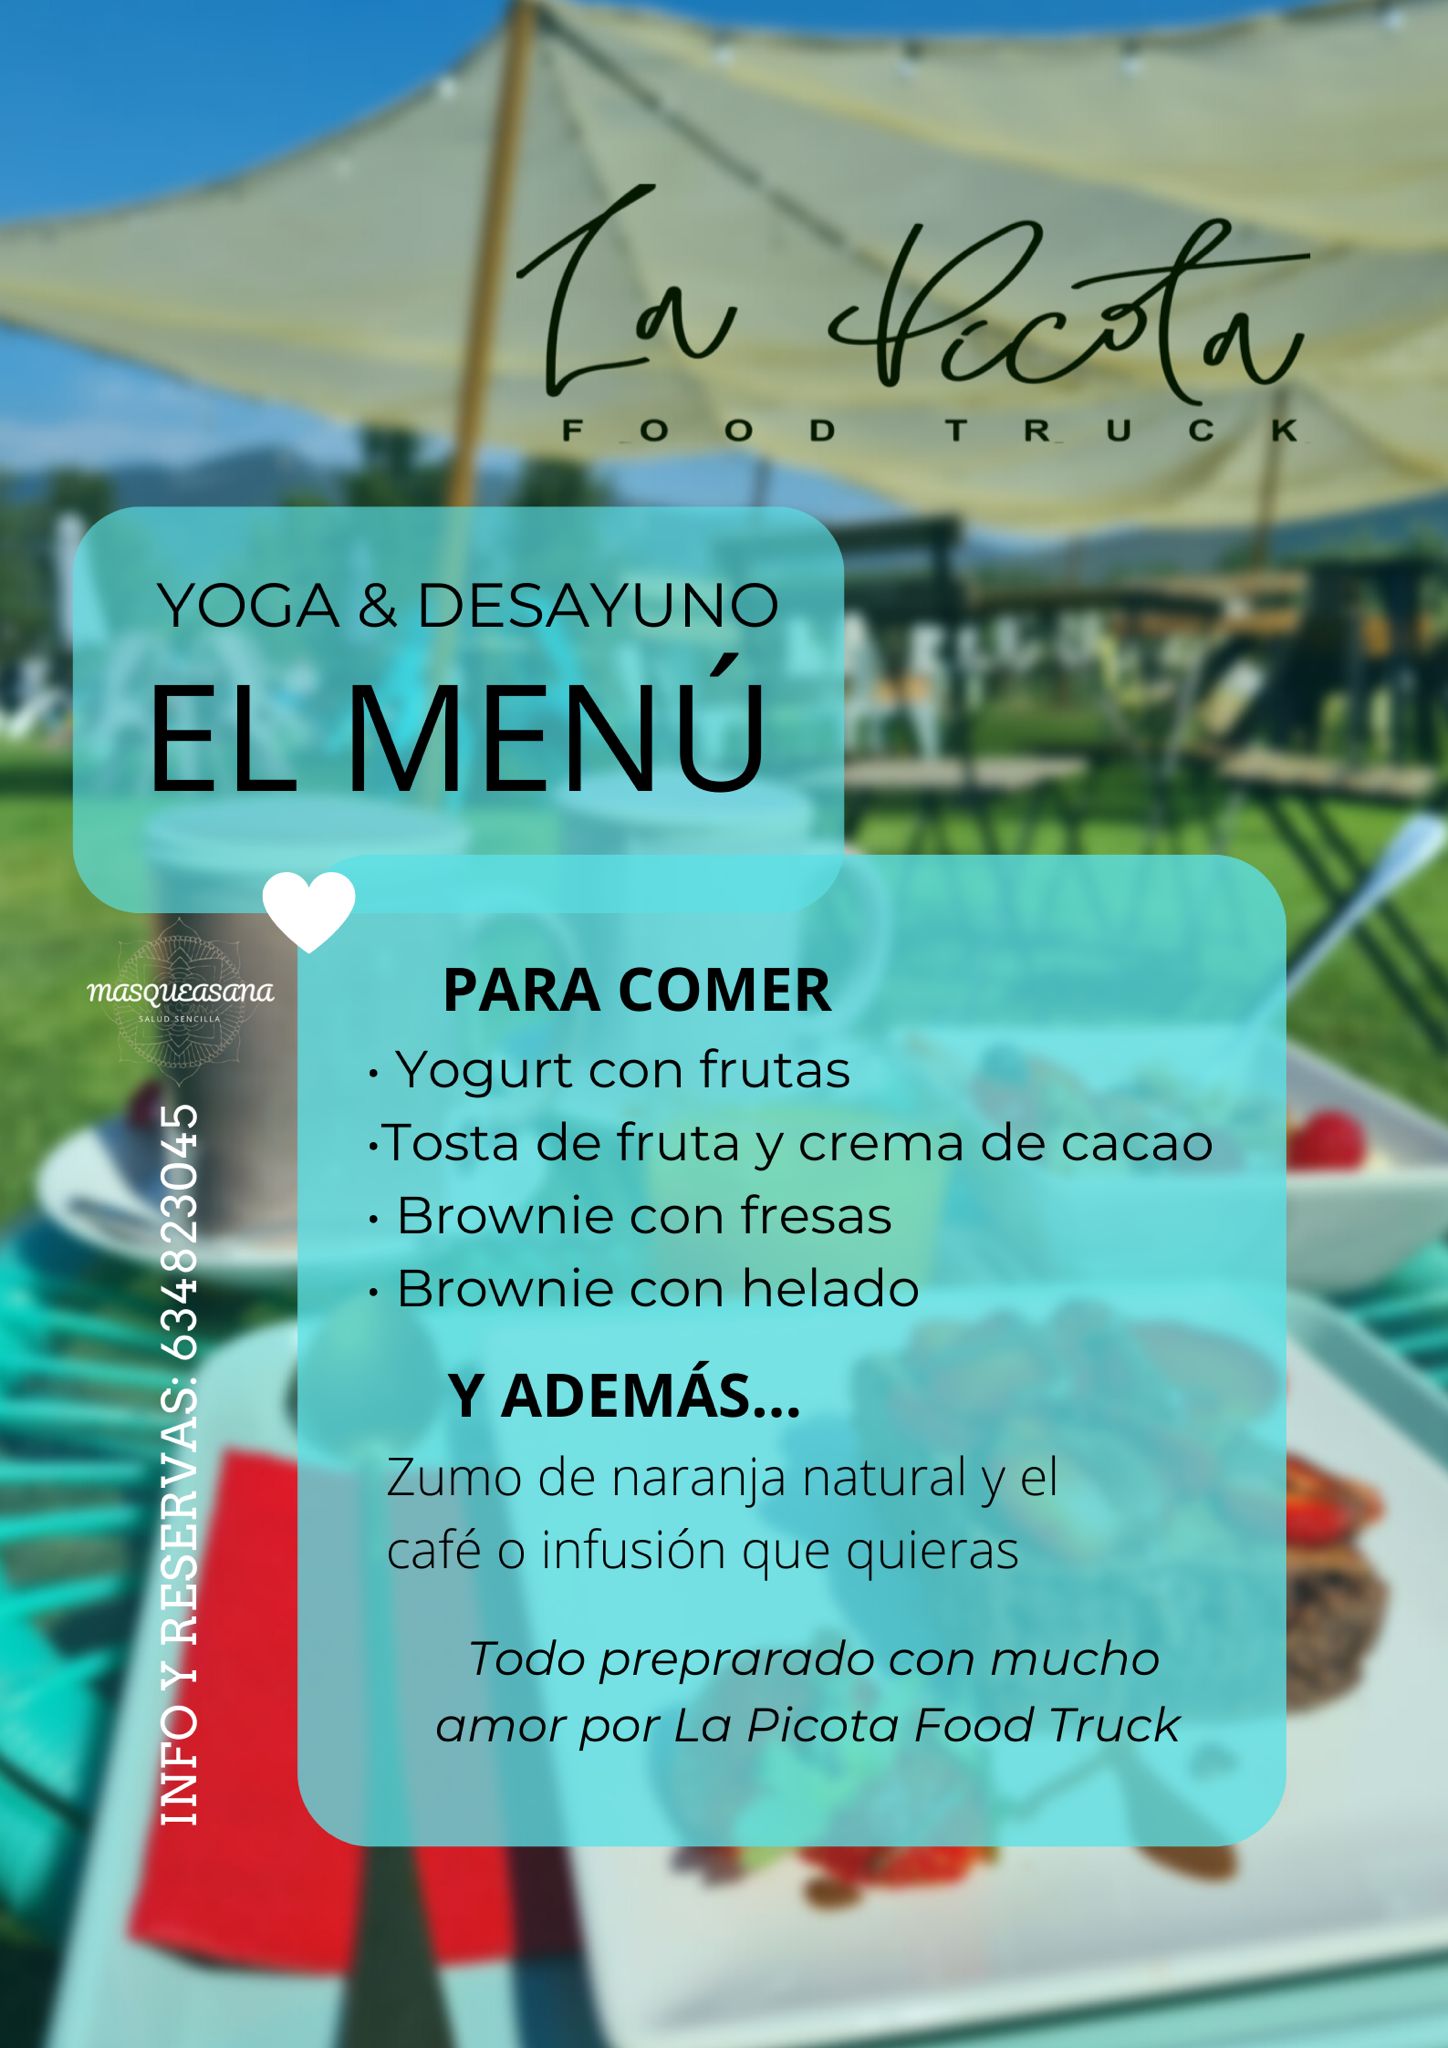 La terraza La Picota de Quilós organiza una mañana de domingo con yoga y desayuno saludable 2